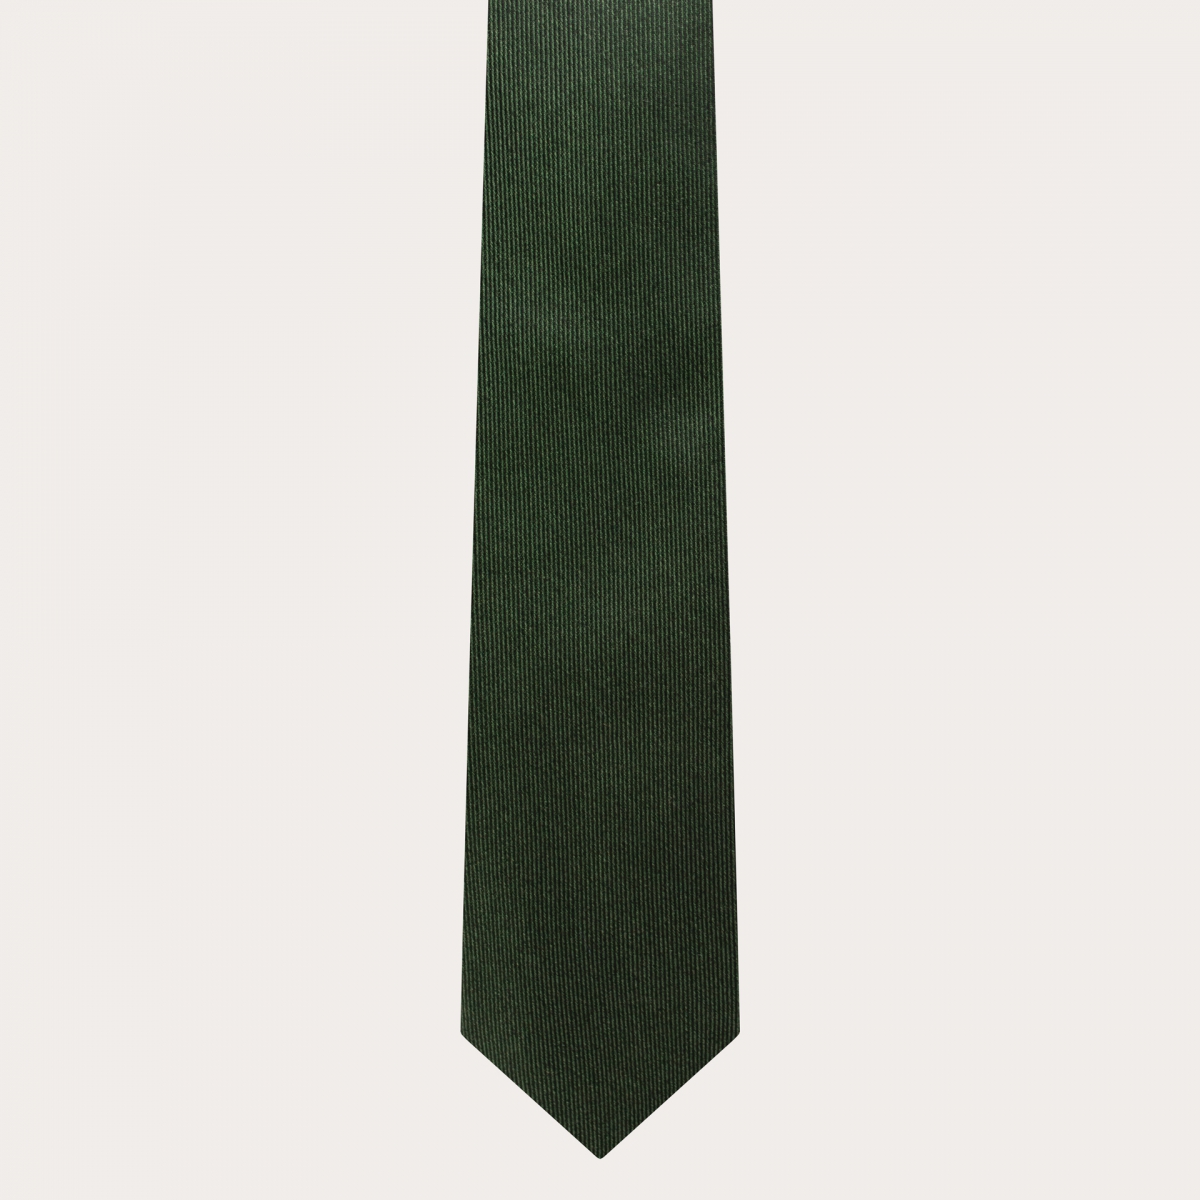 Elegant forest green silk necktie